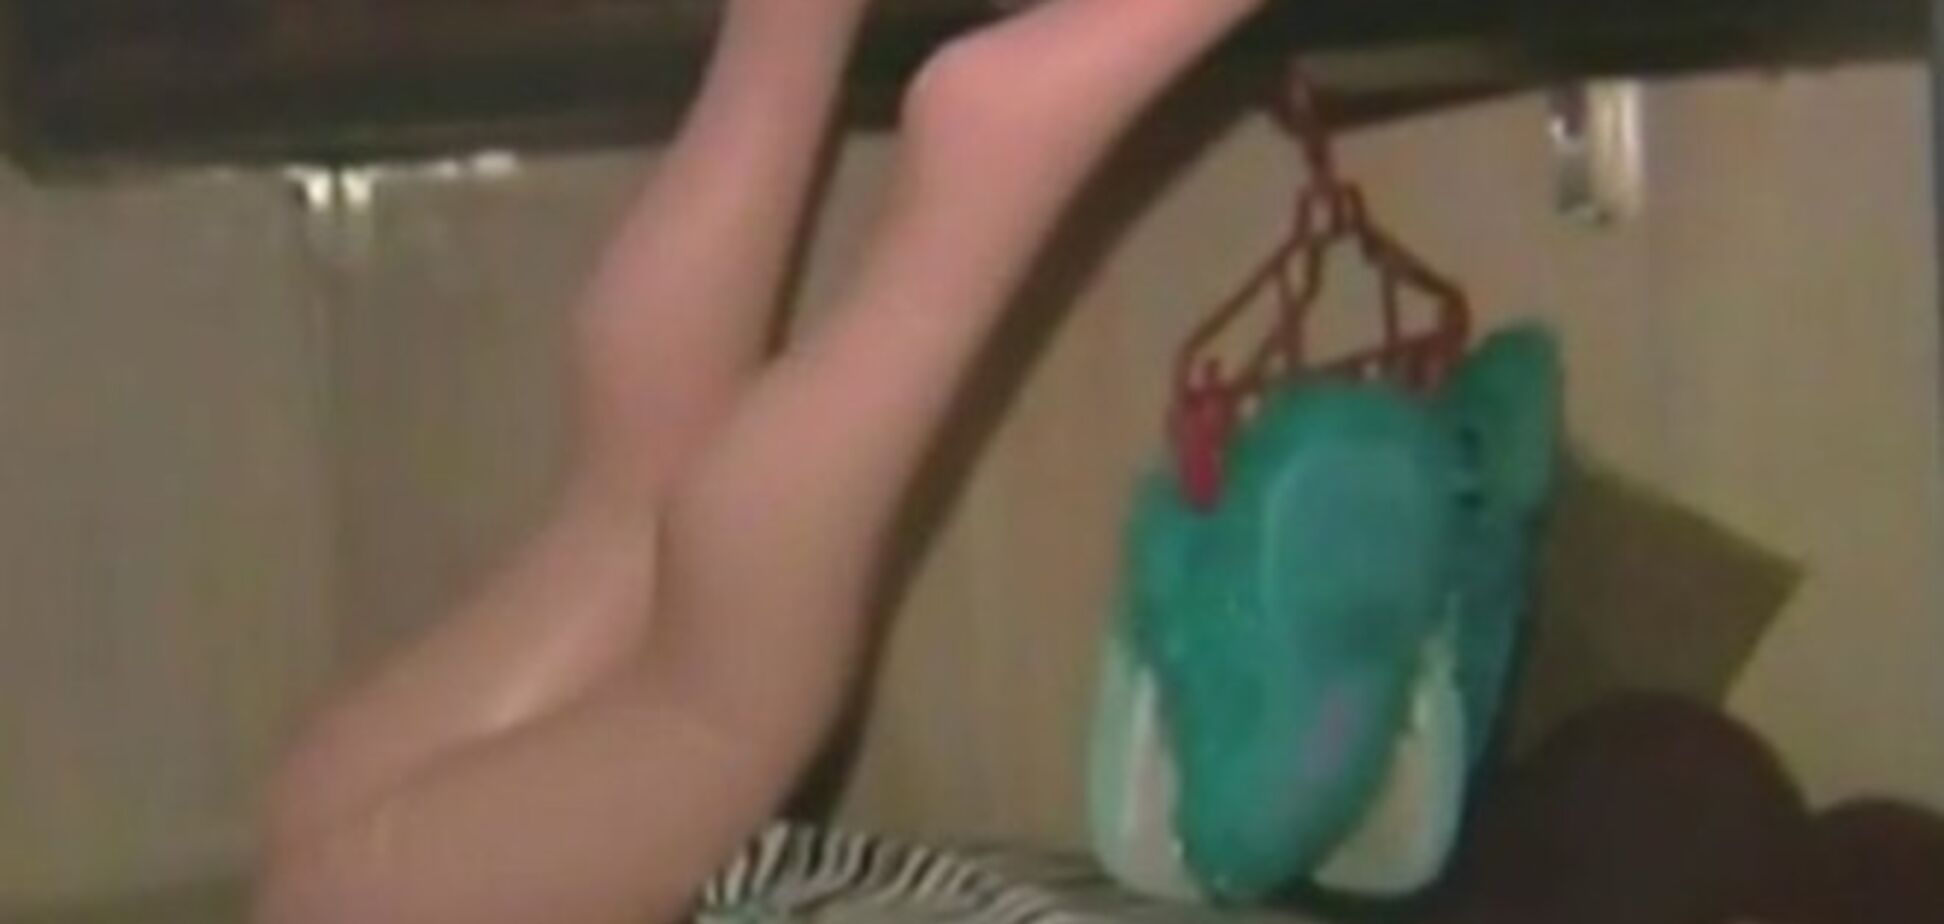 У філіппінській в'язниці виявили джакузі і секс-іграшки: викривальне відео